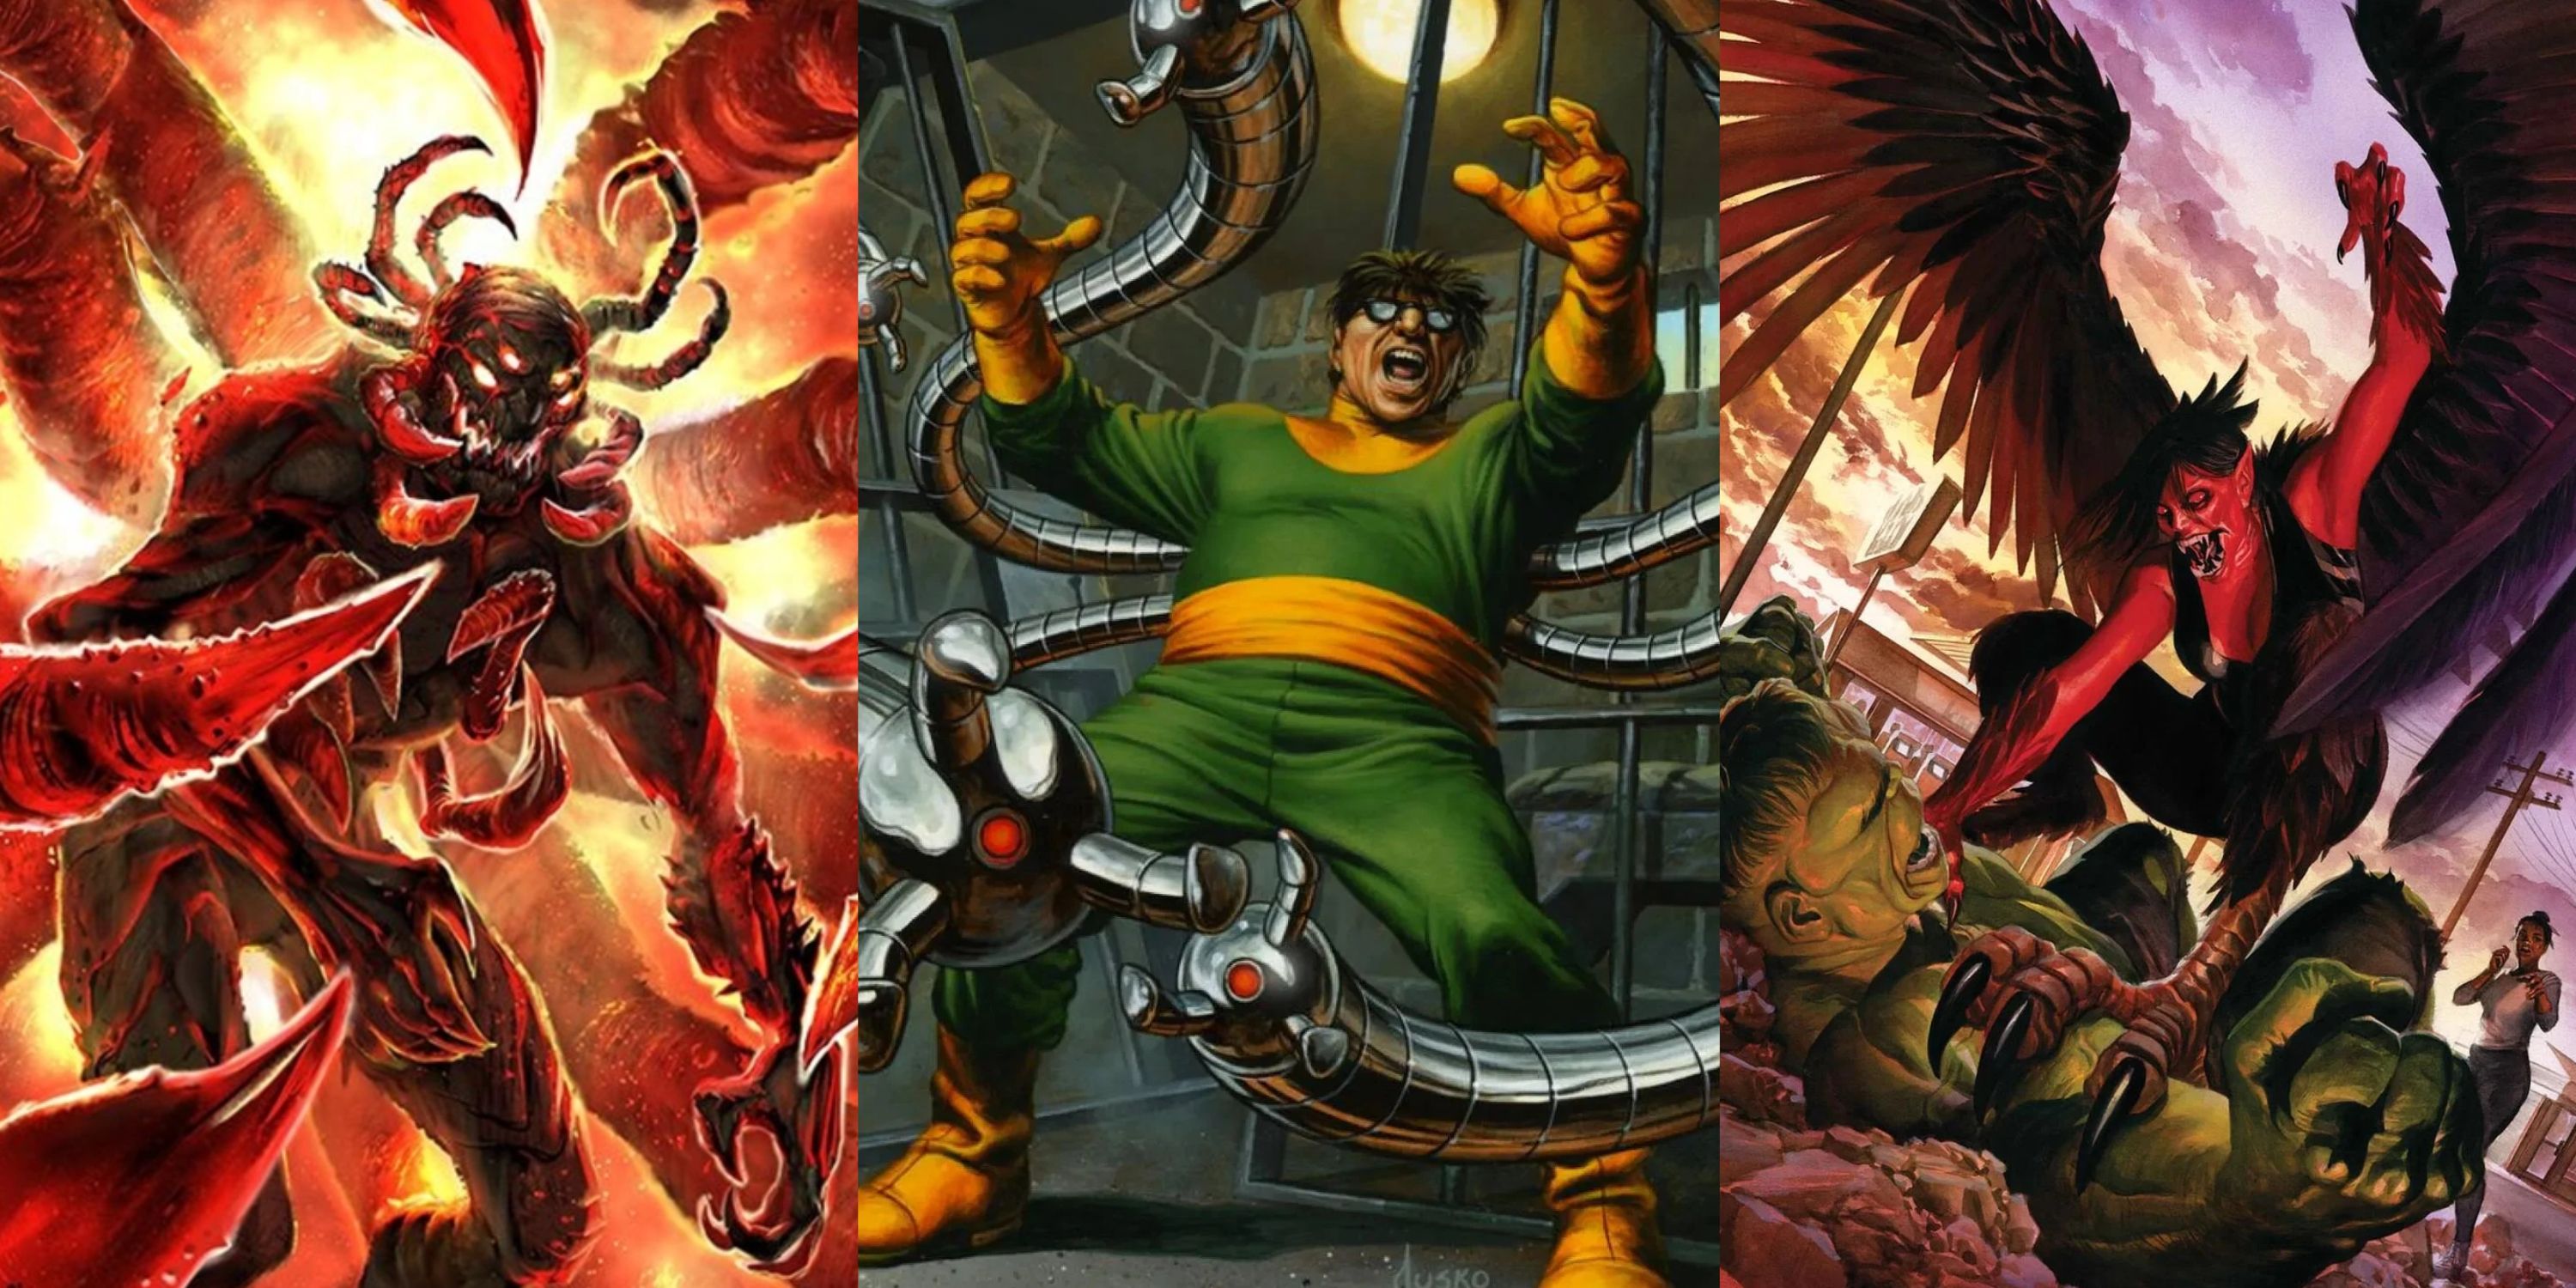 Split image of The Void, Doc Ock and Harpy vs Hulk in Marvel Comics